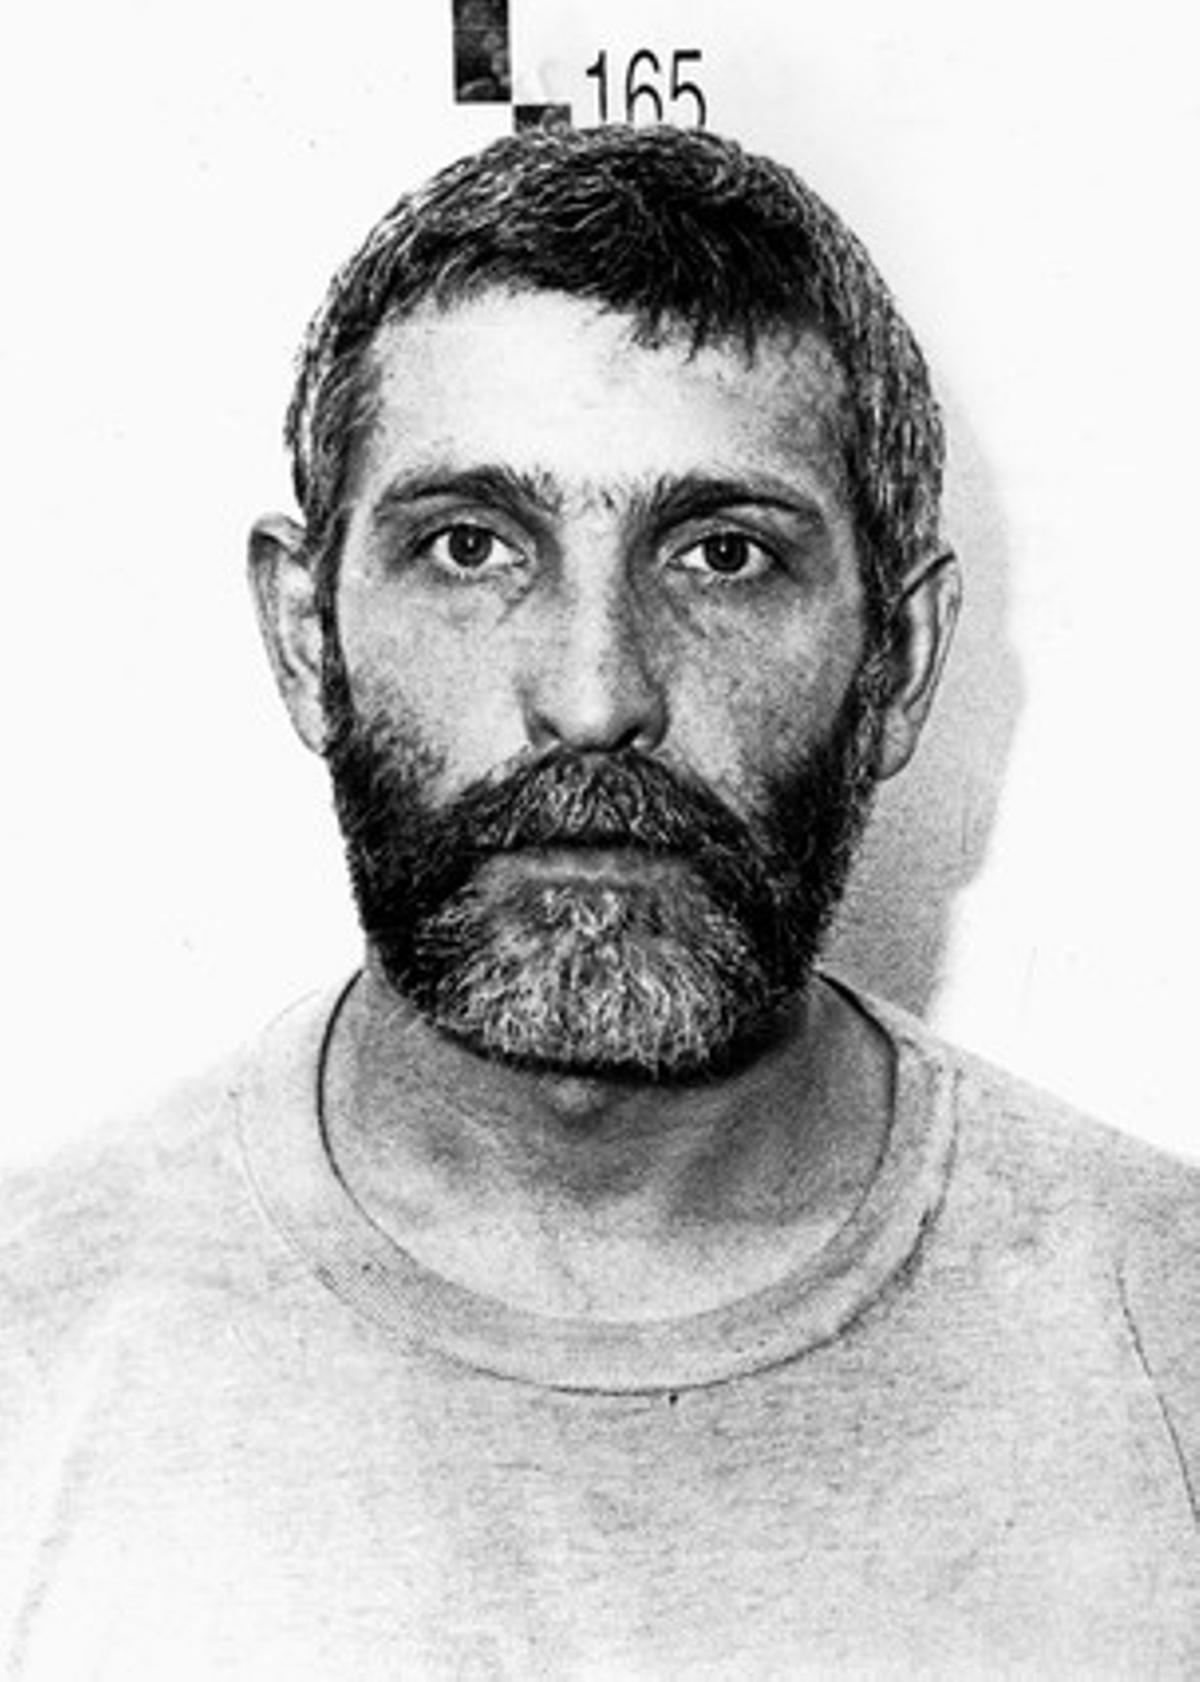 Imagen de archivo del etarra Jesús María Uribetxebarría Bolinaga, condenado por el secuestro del exfuncionario de prisiones José Antonio Ortega Lara